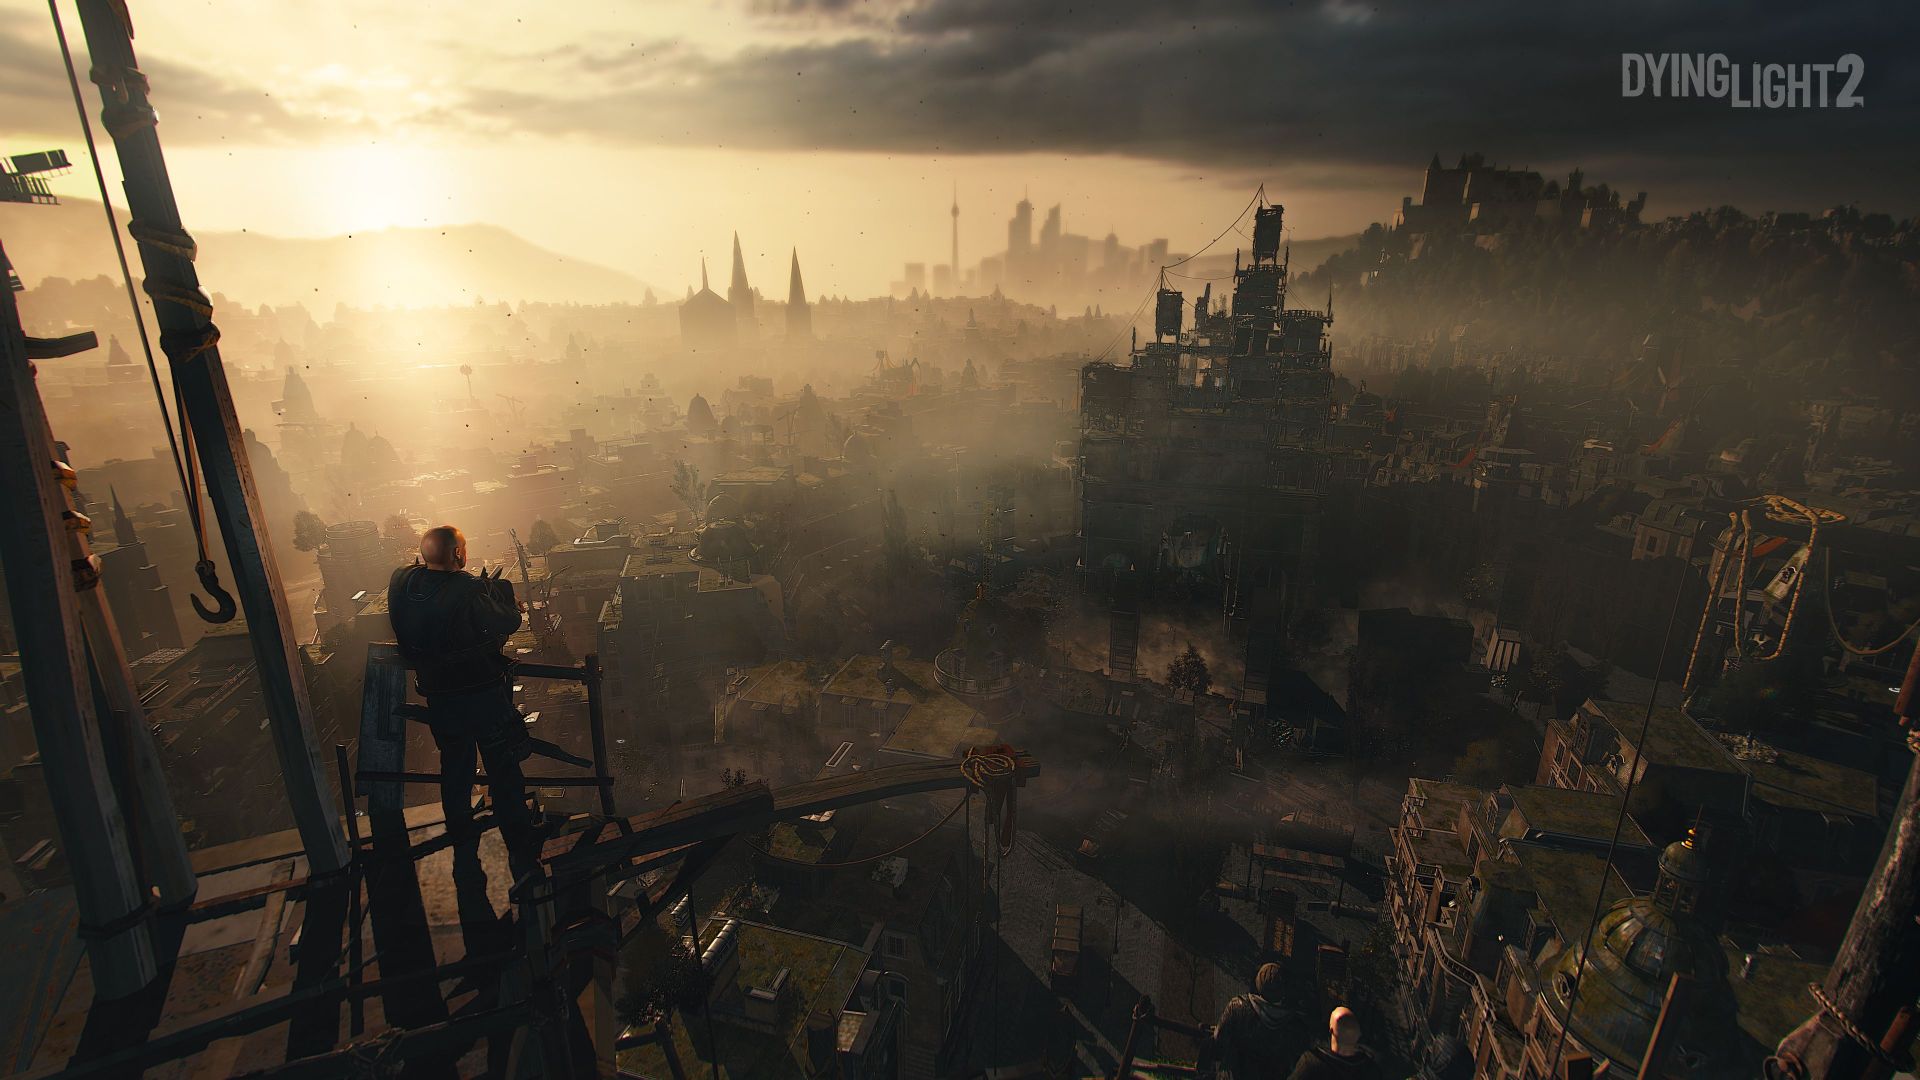 تماشا کنید: تریلر جدید بازی Dying Light 2 منتشر شد